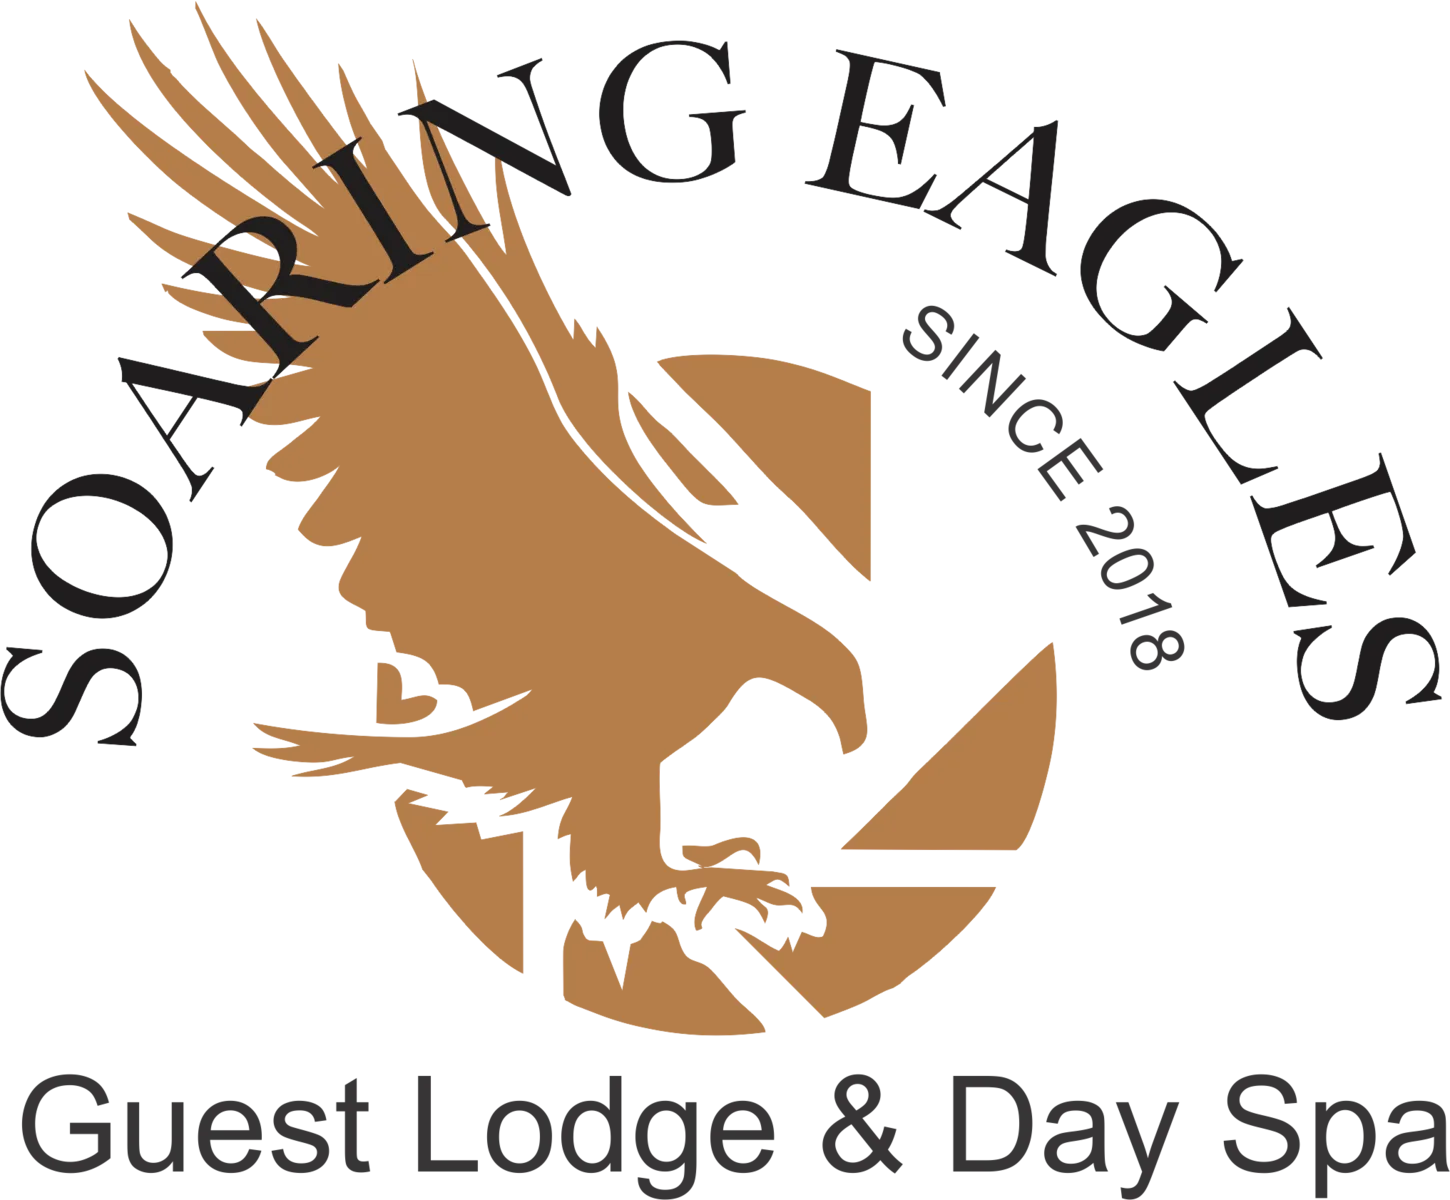 Soaring Eagles Lodge & Spa